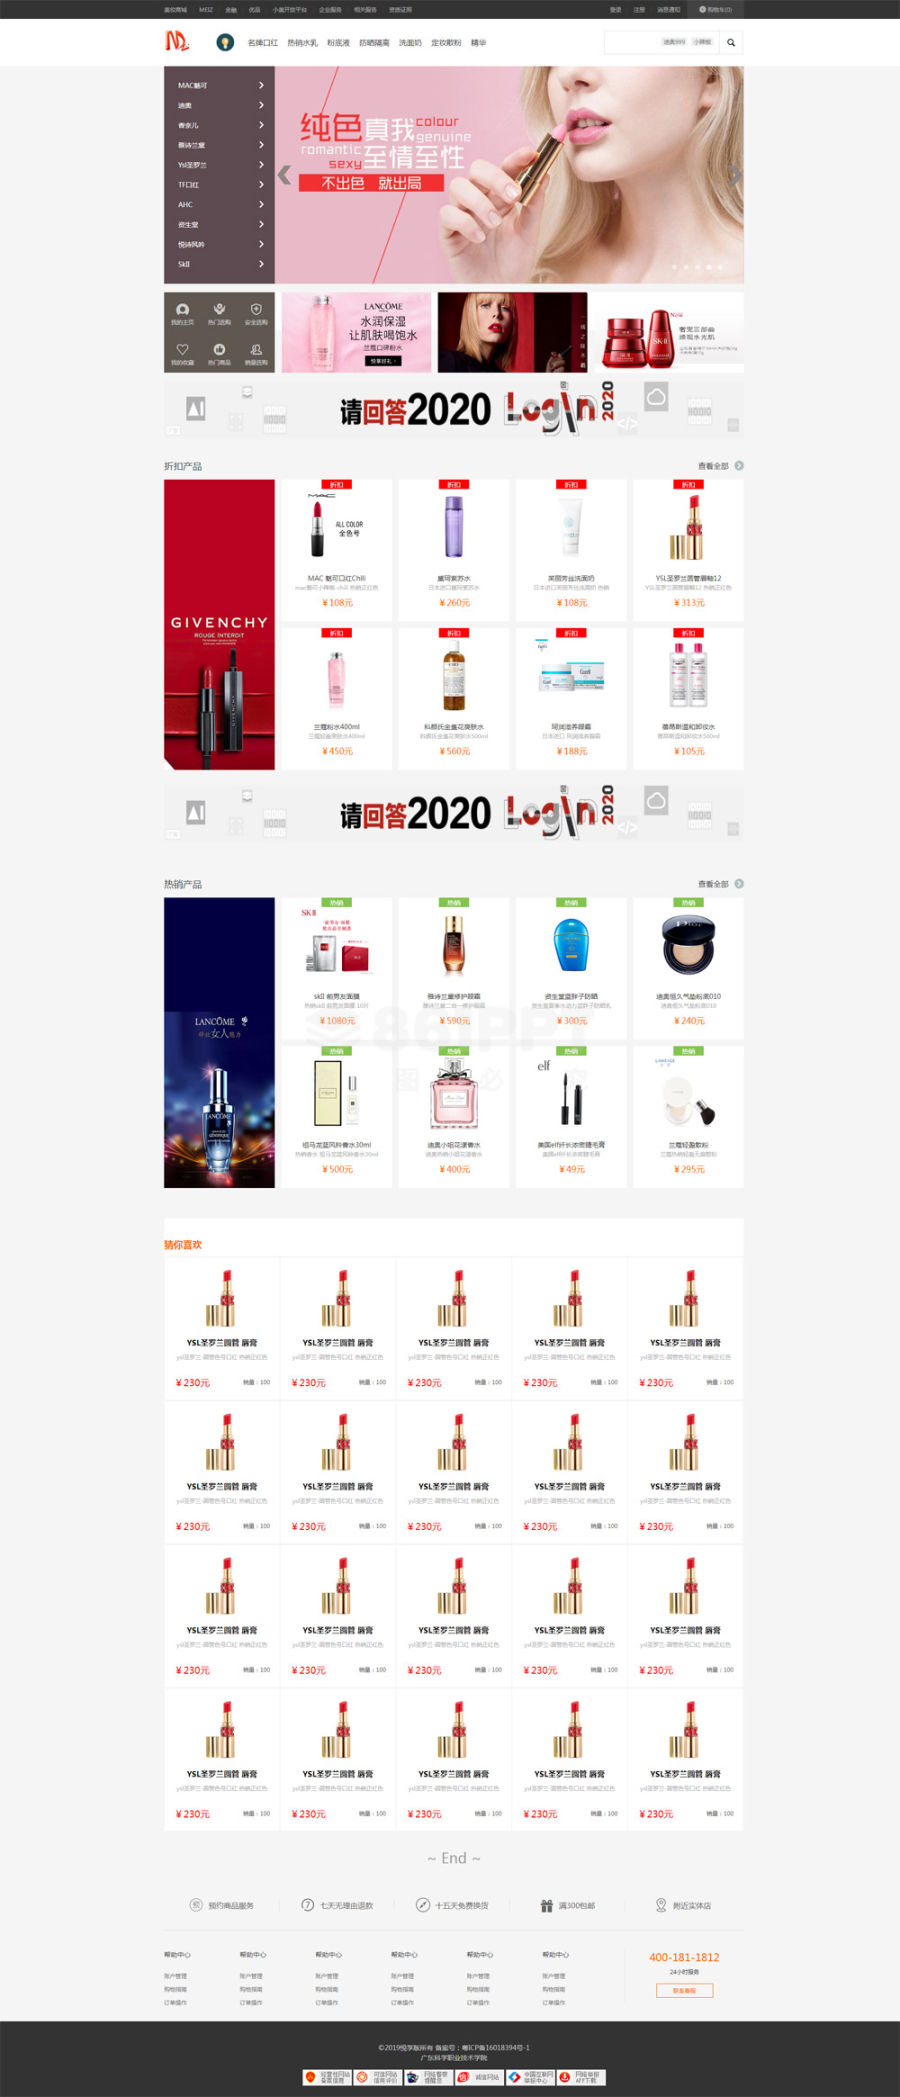 中文版的女性美妆商城首页设计html网页模板